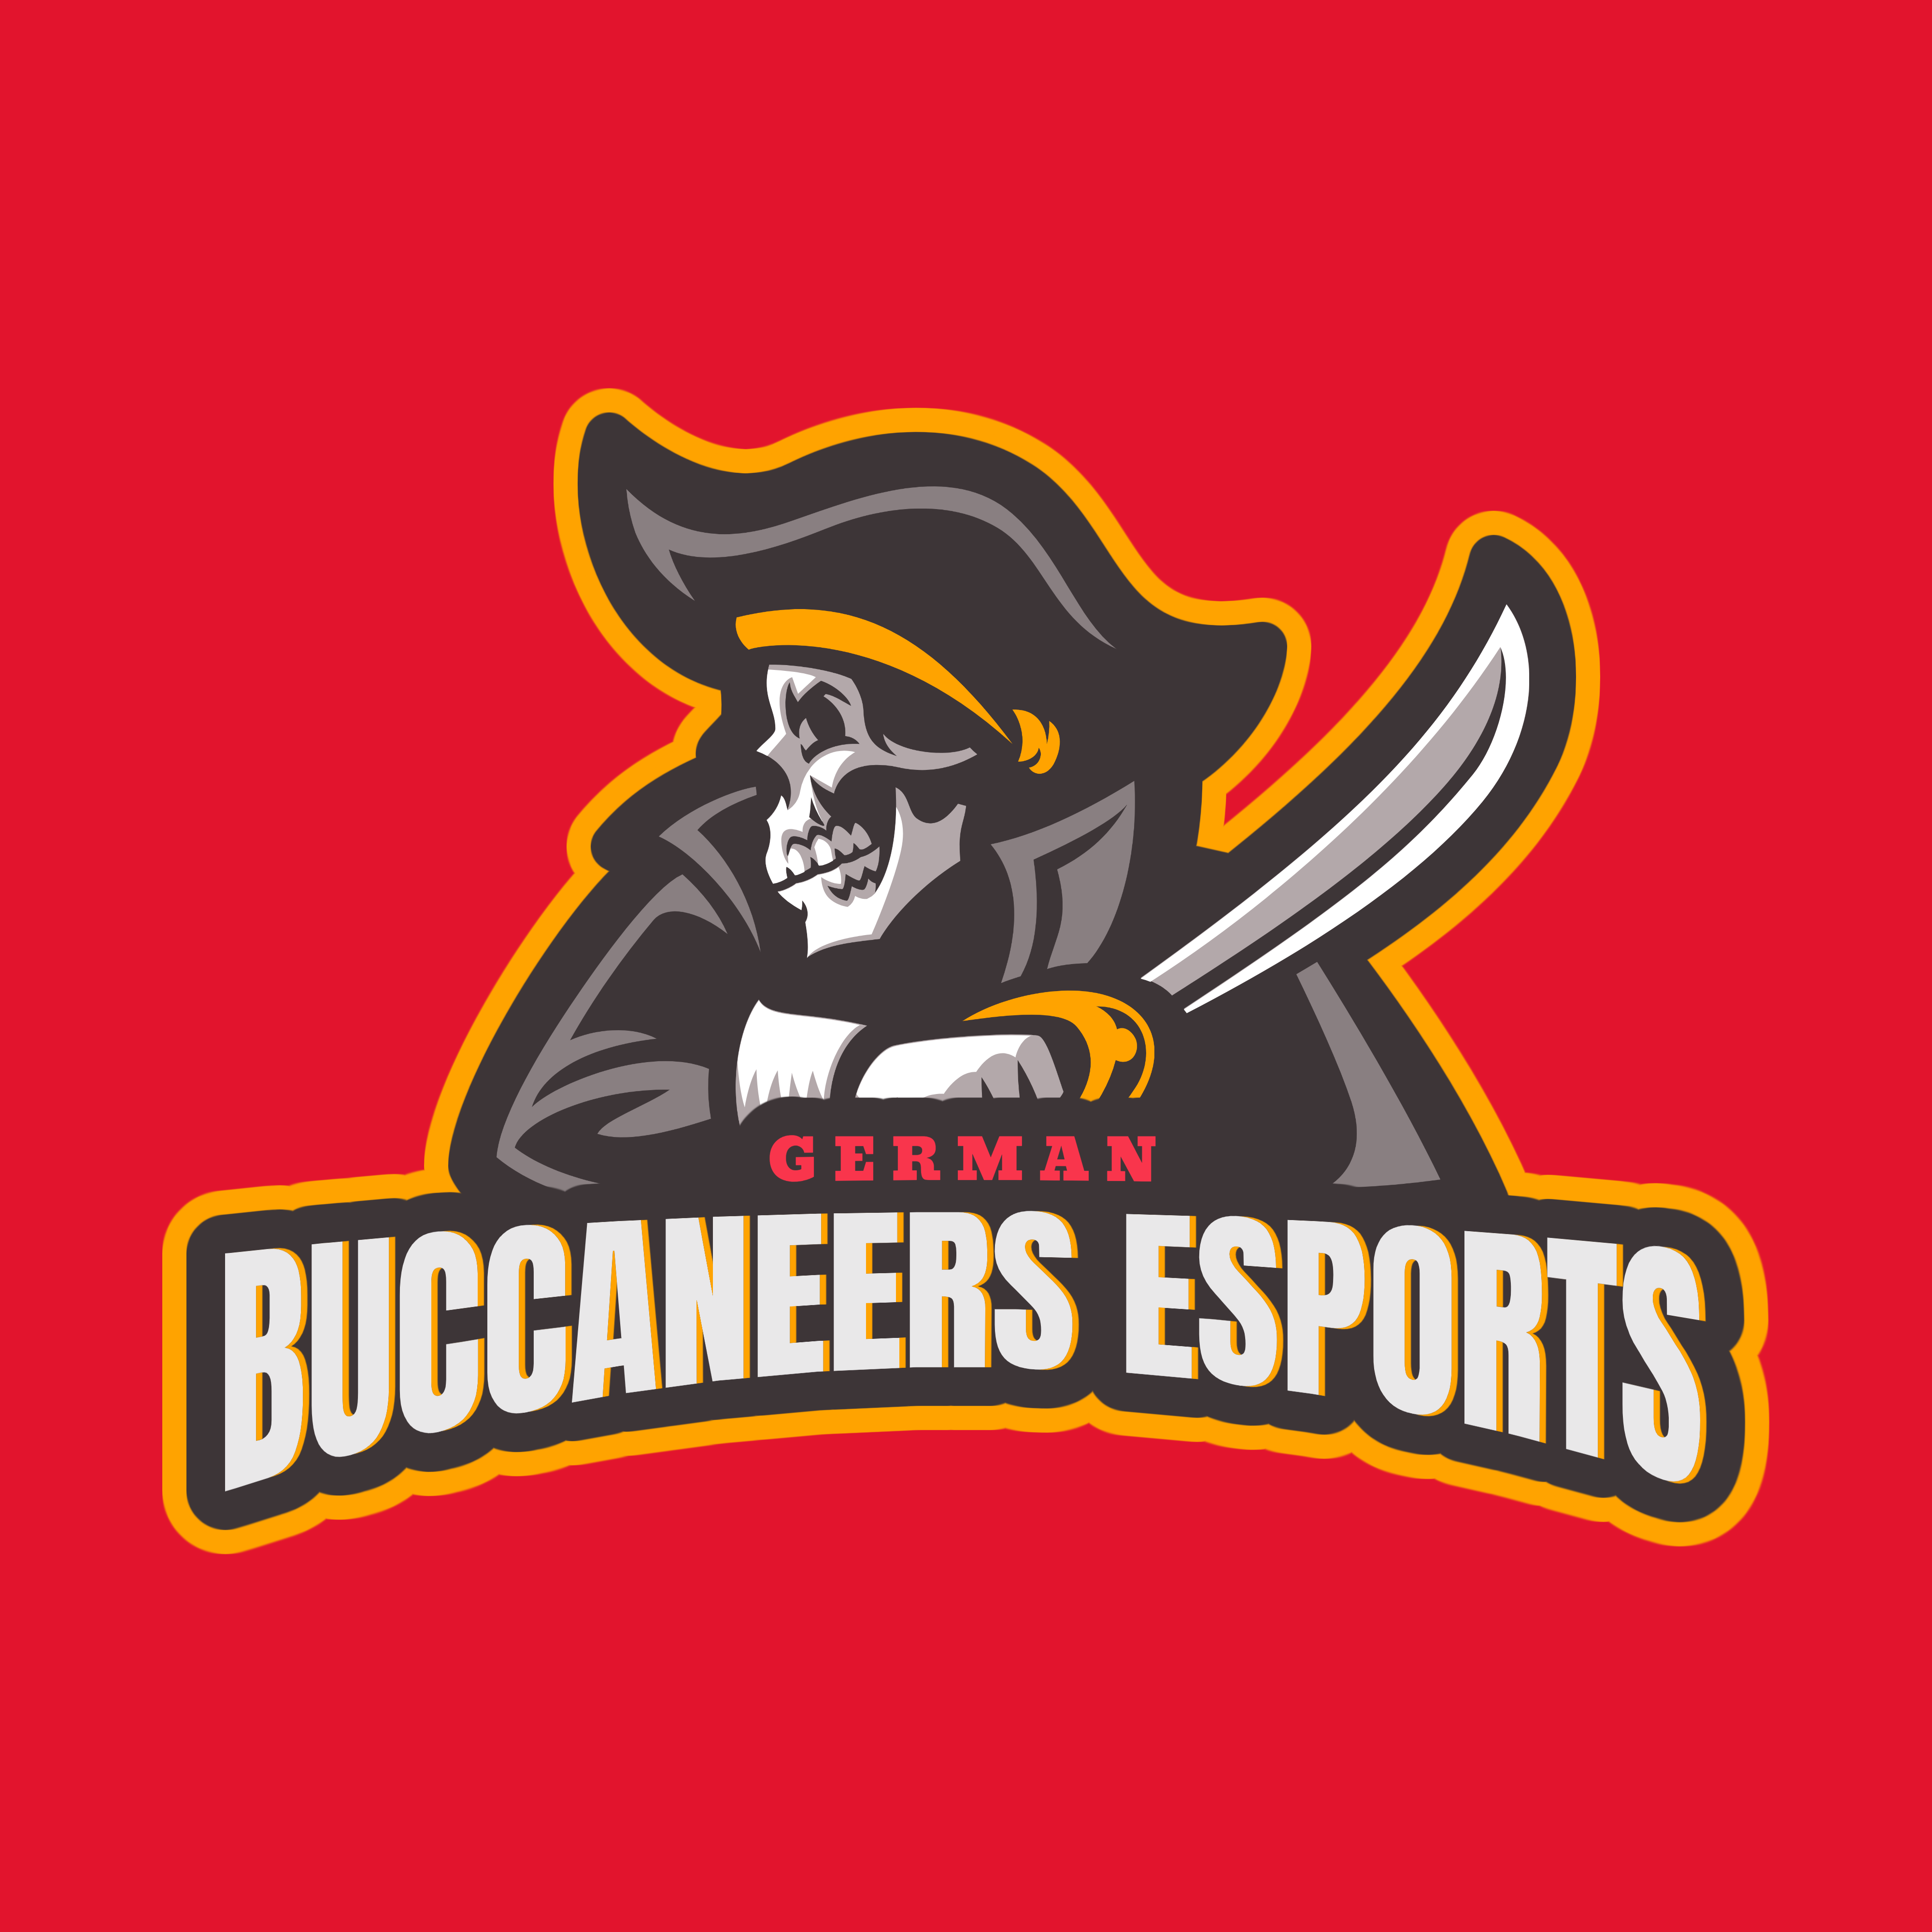 German Buccaneers eSports